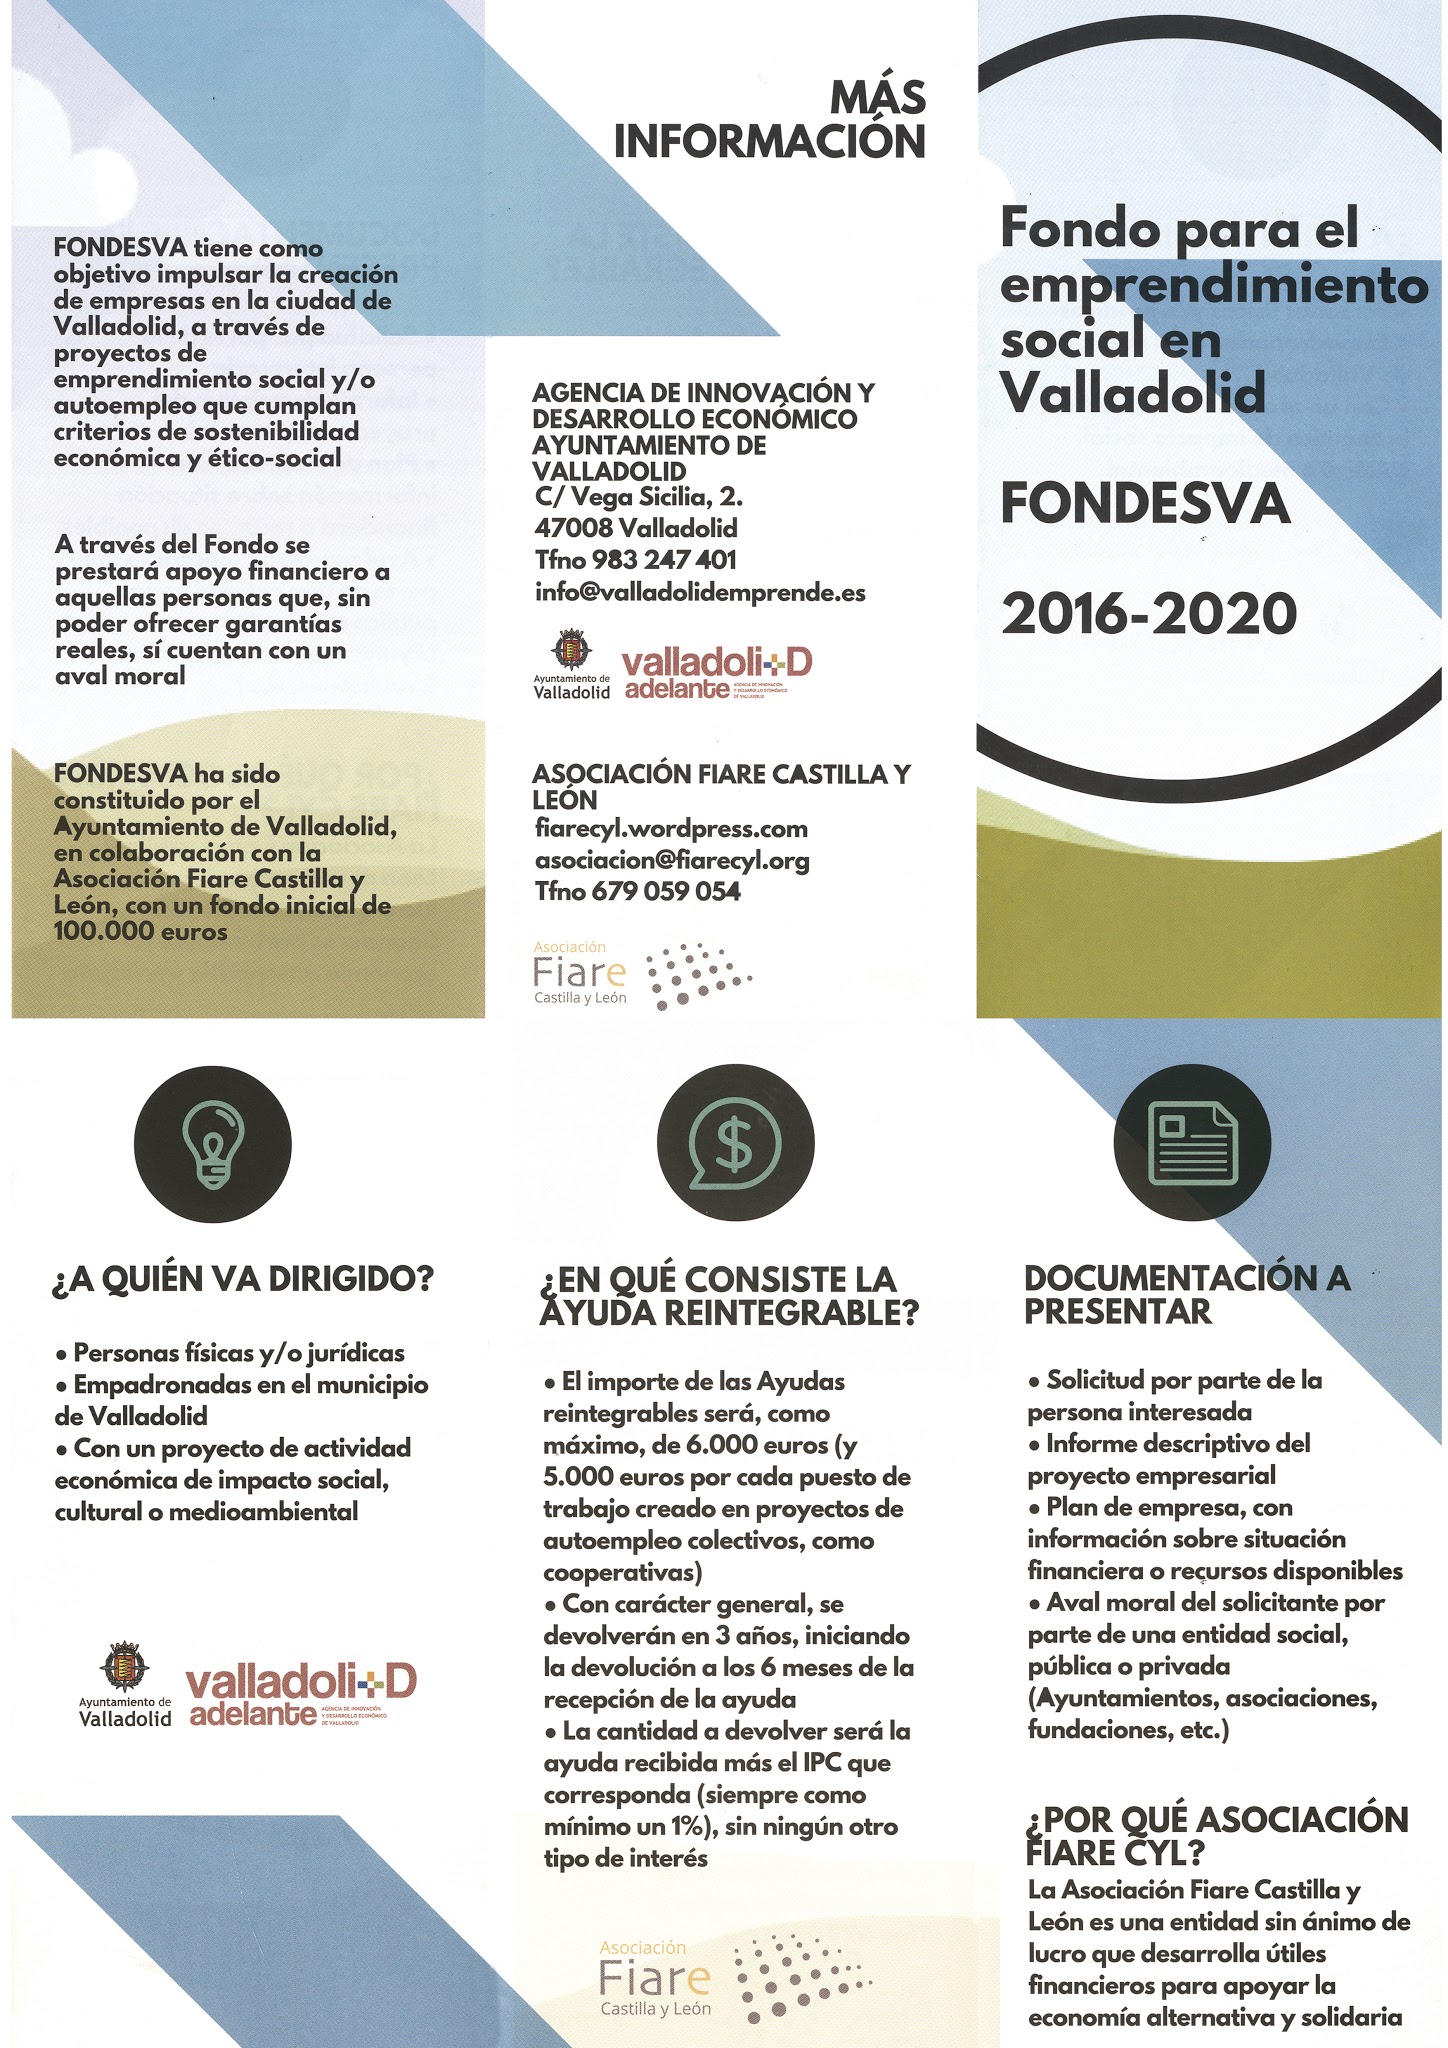 Damos a conocer: Fondo para el emprendimiento social en Valladolid. FONDESVA 2016-2020